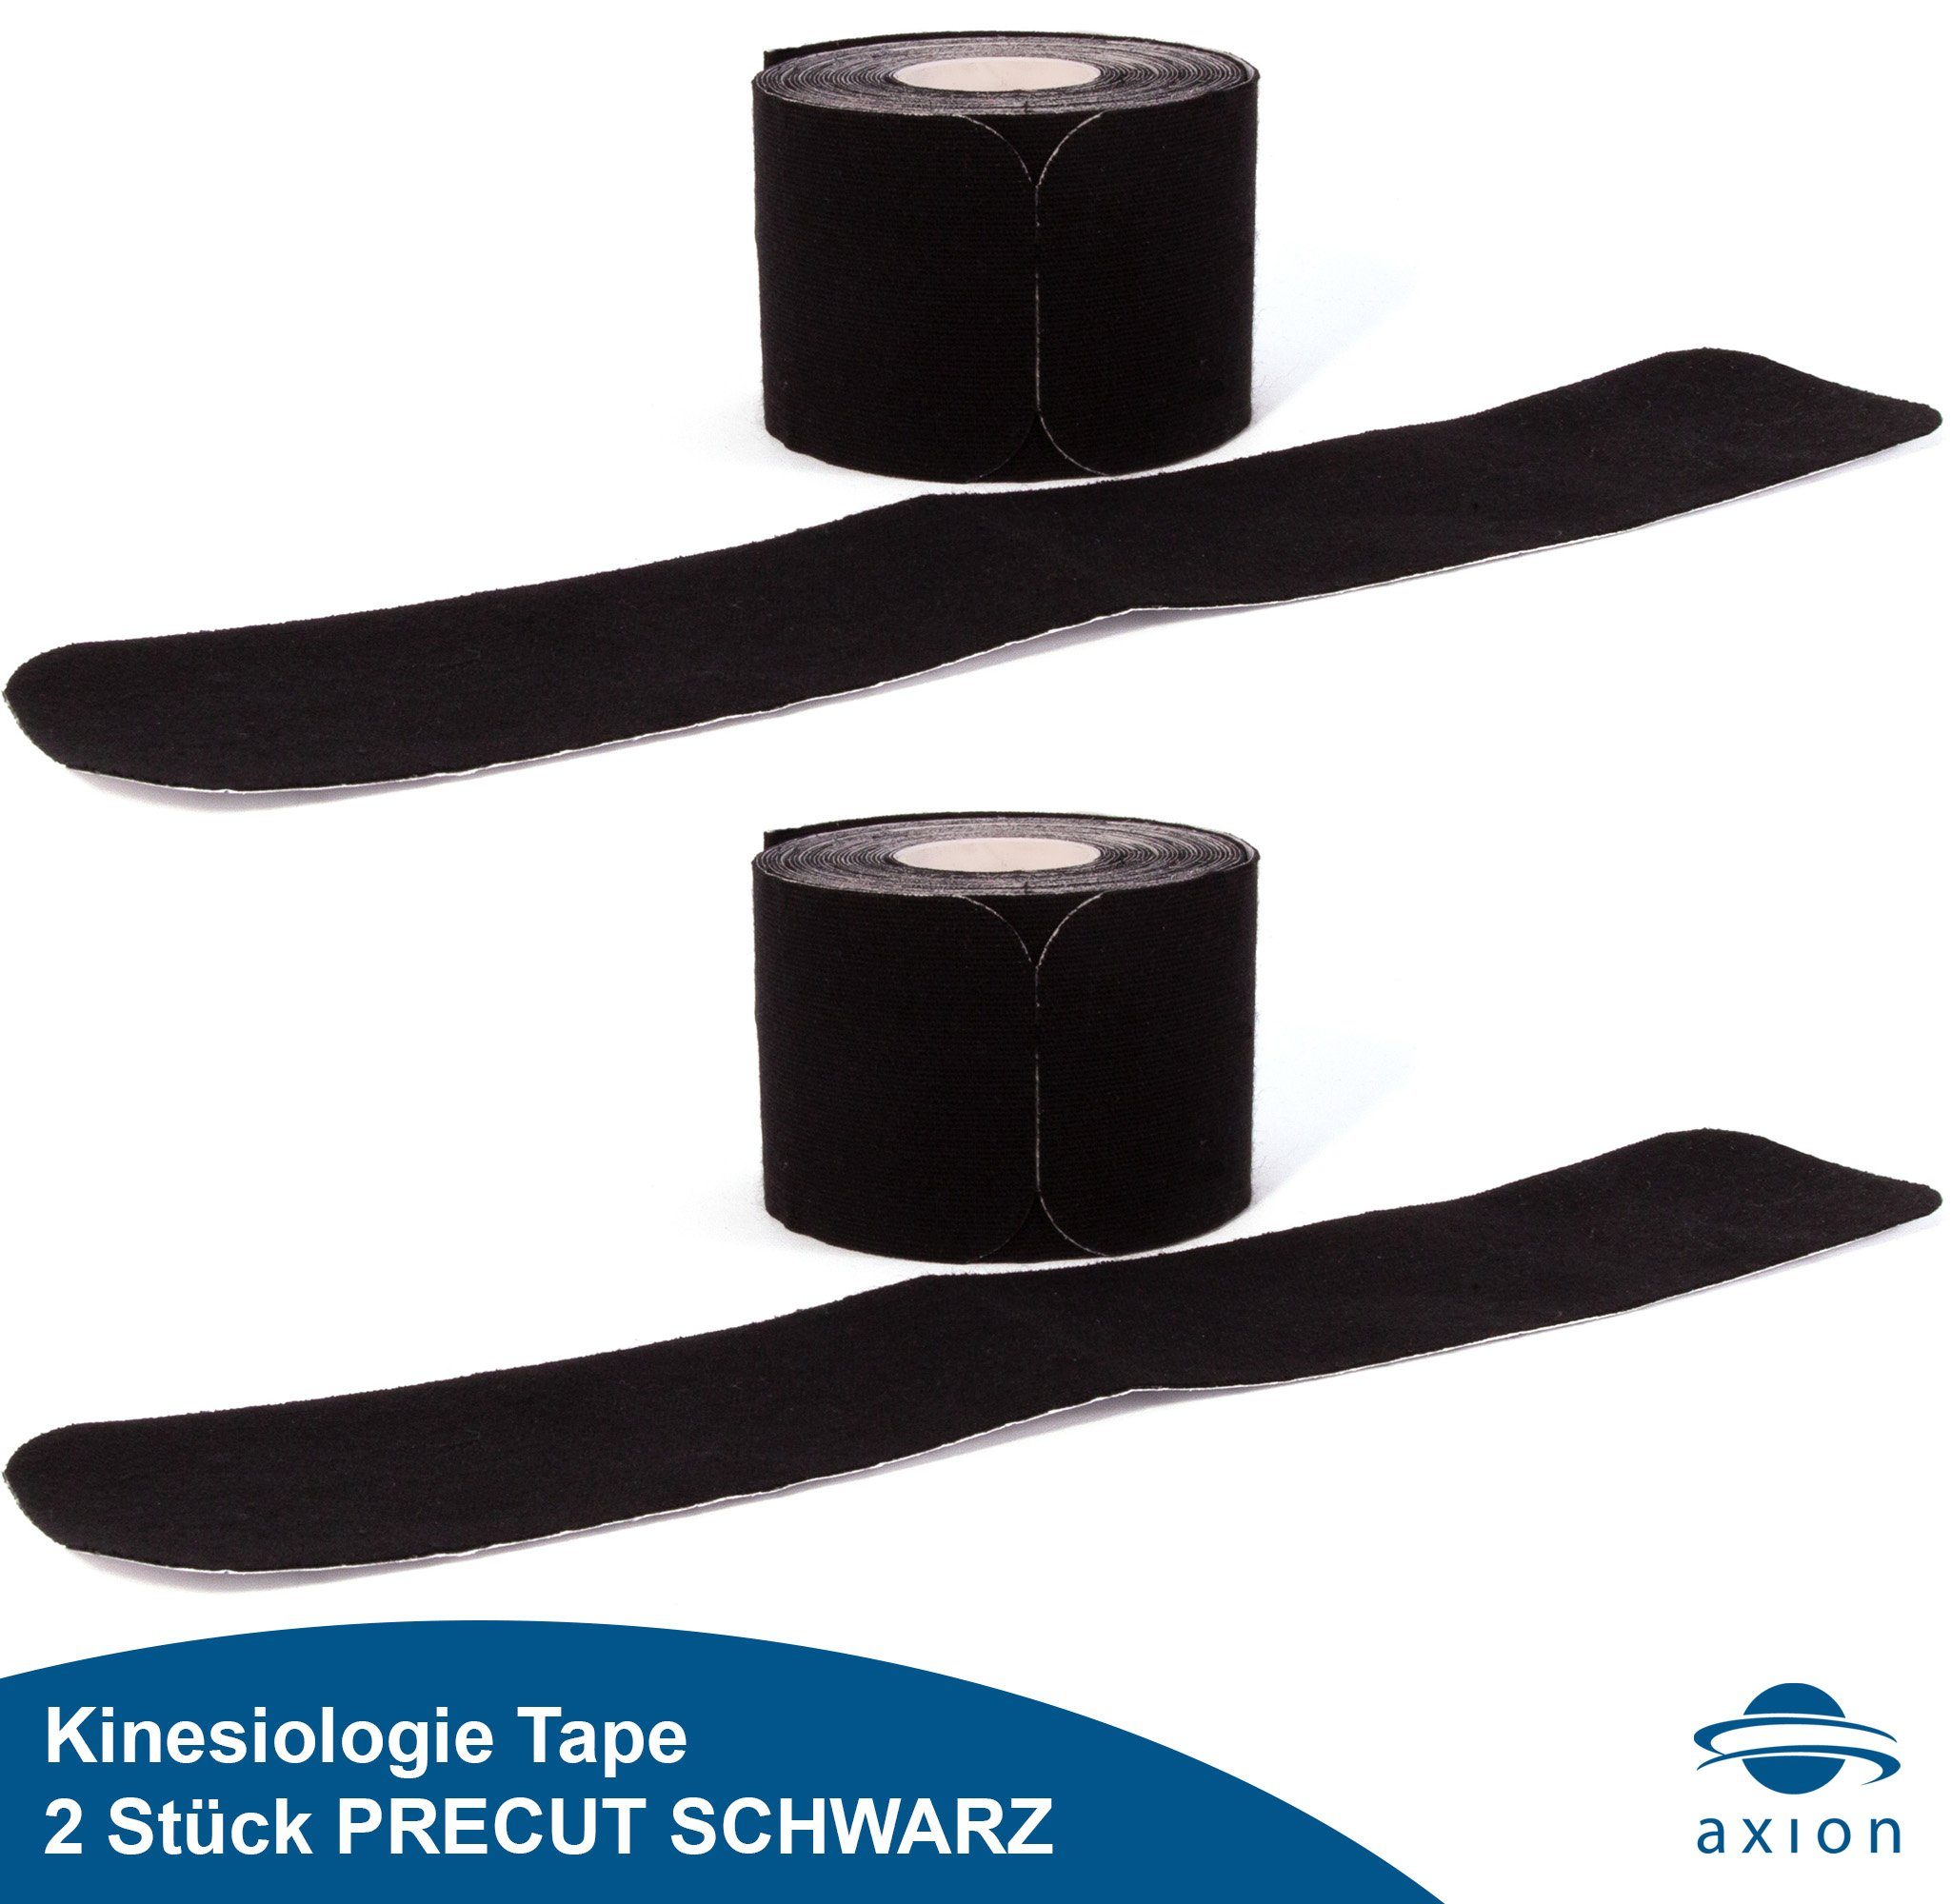 Axion Kinesiologie-Tape PRECUT, 20 vorgeschnittene Sport Tapes 25 x 5 cm - in schwarz (2-St., Physio-Tape optimal für Sport) wasserfest, hautfreundlich, elastisch, Kinesio-Tapes selbstklebend